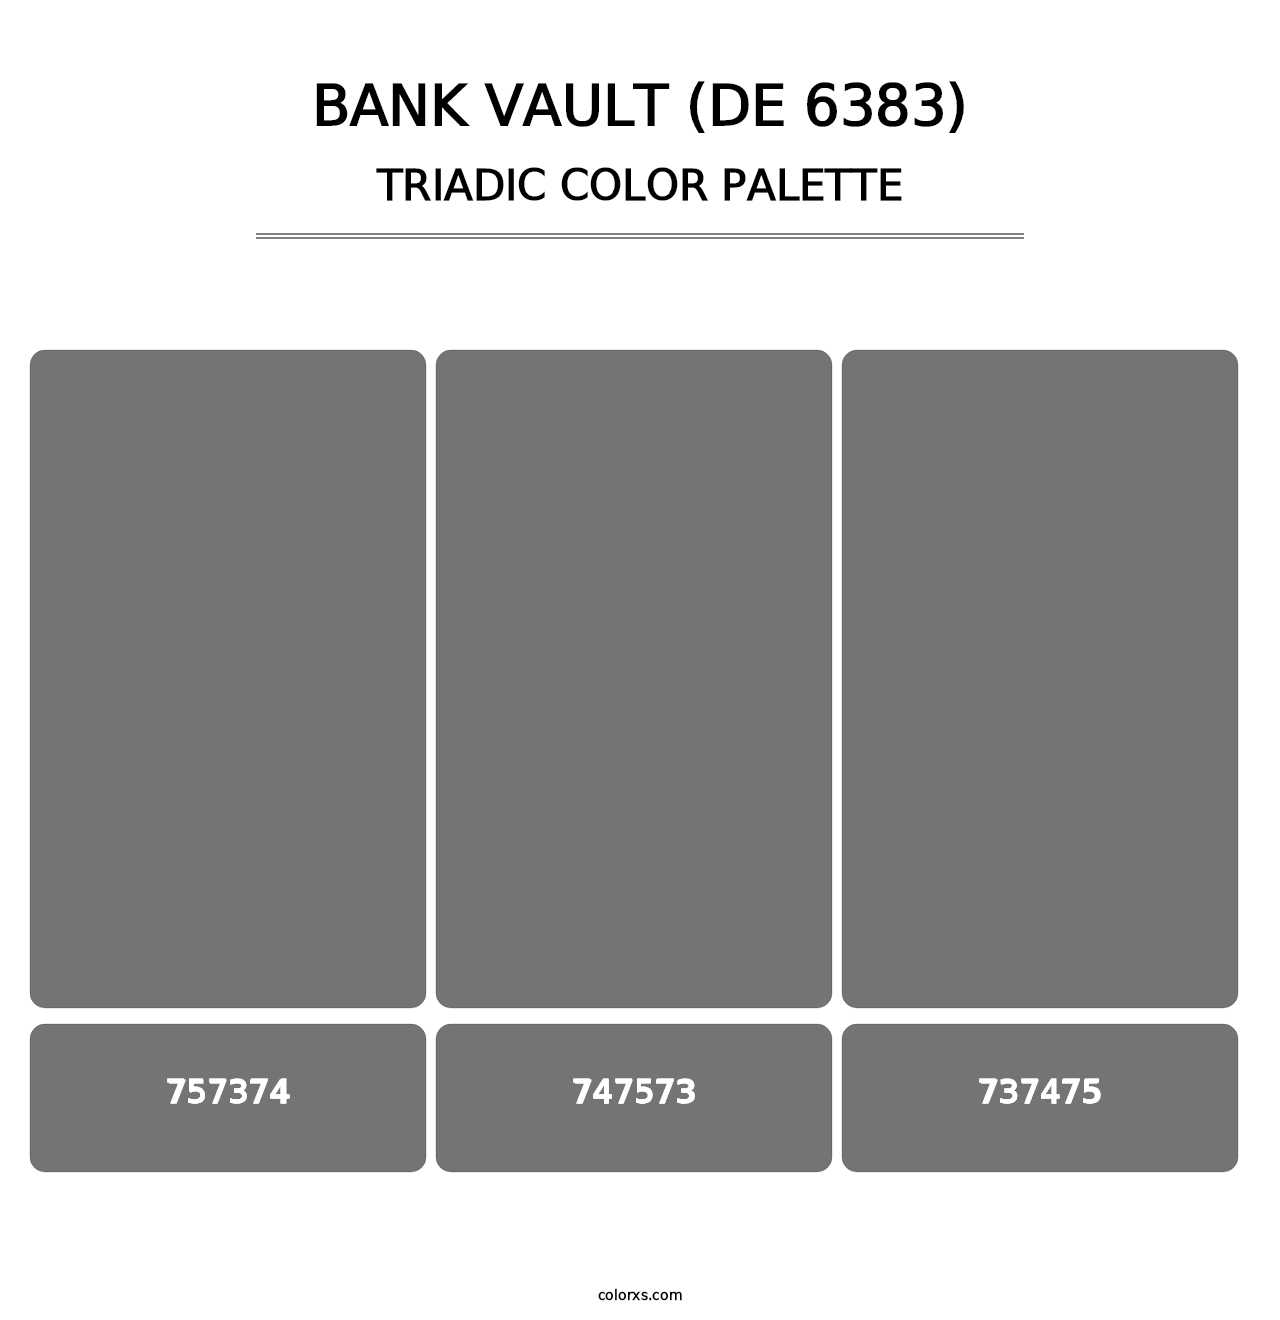 Bank Vault (DE 6383) - Triadic Color Palette